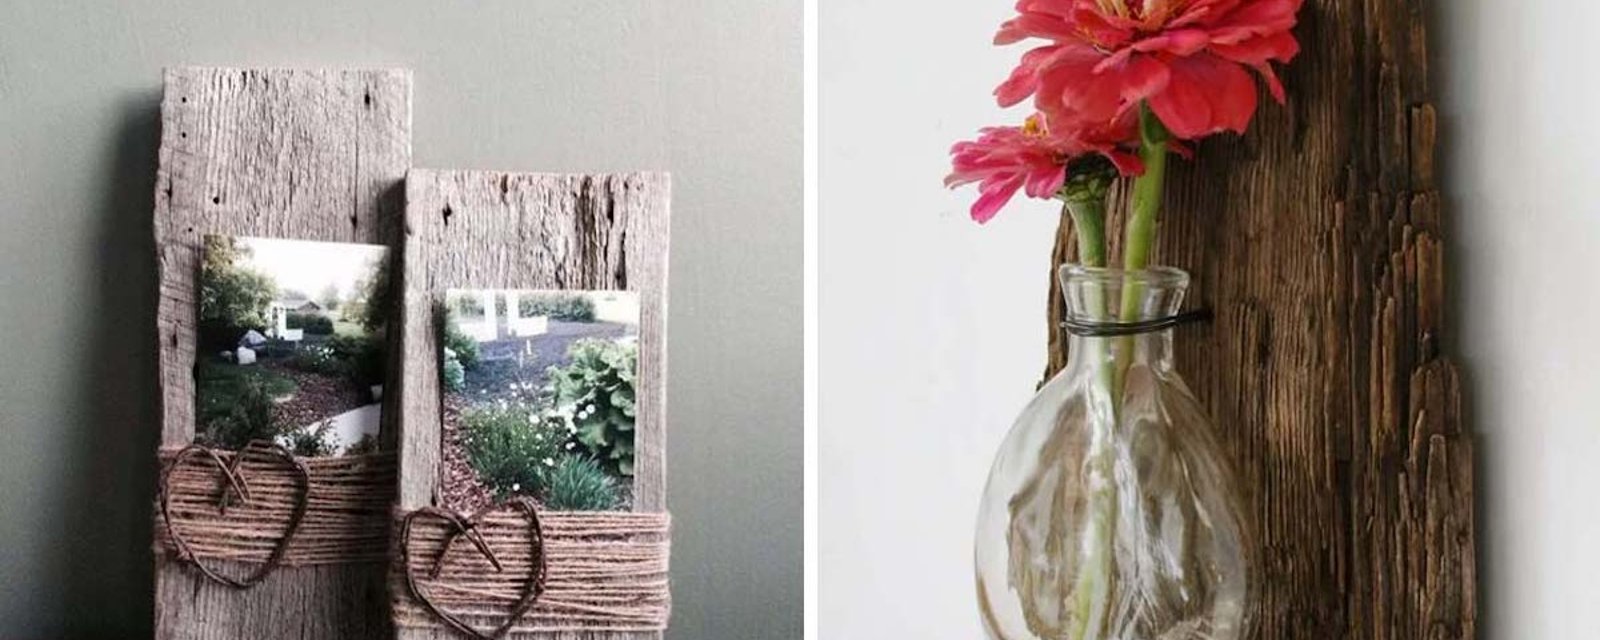 Comment utiliser des bouts de bois récupérés pour décorer magnifiquement votre maison. 9 idées géniales!